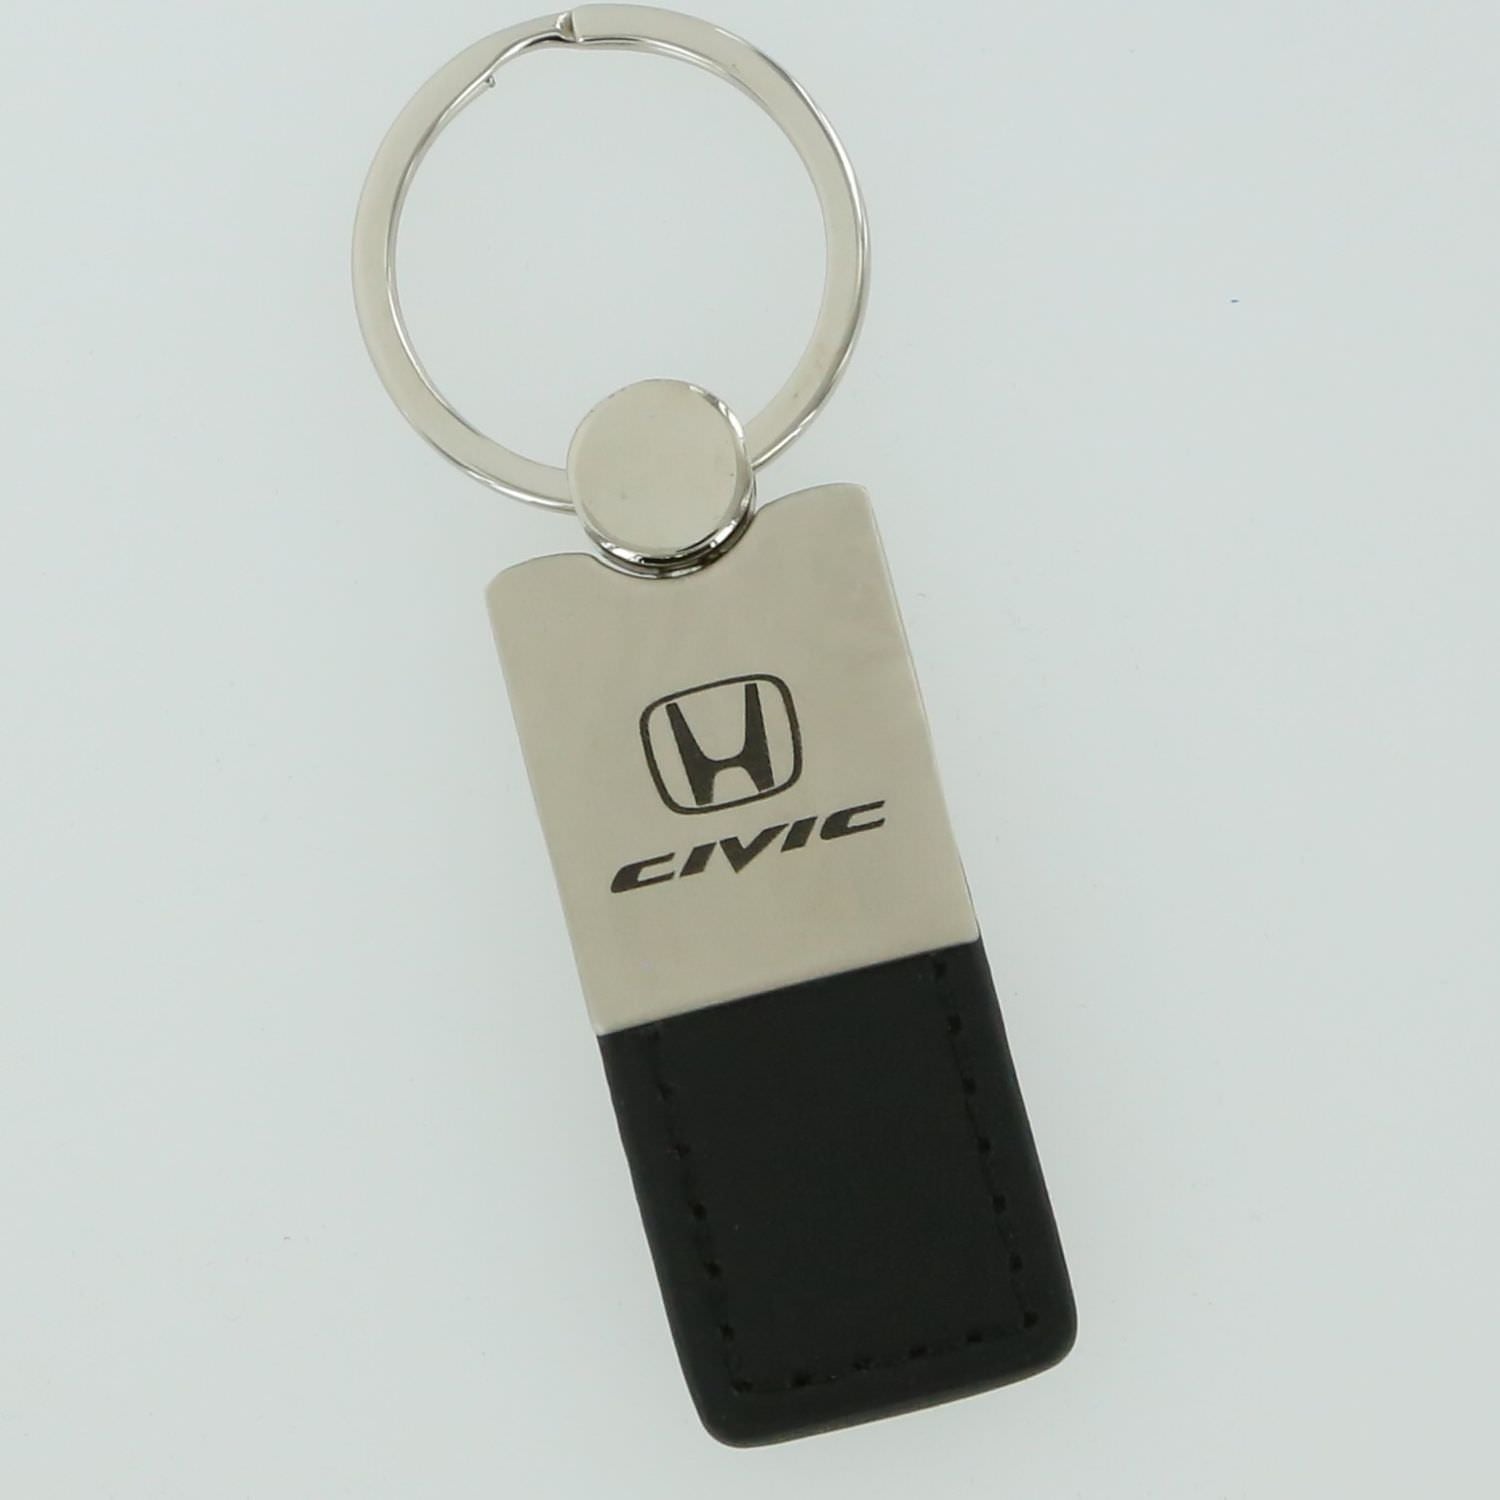 Honda Civic Key Chain